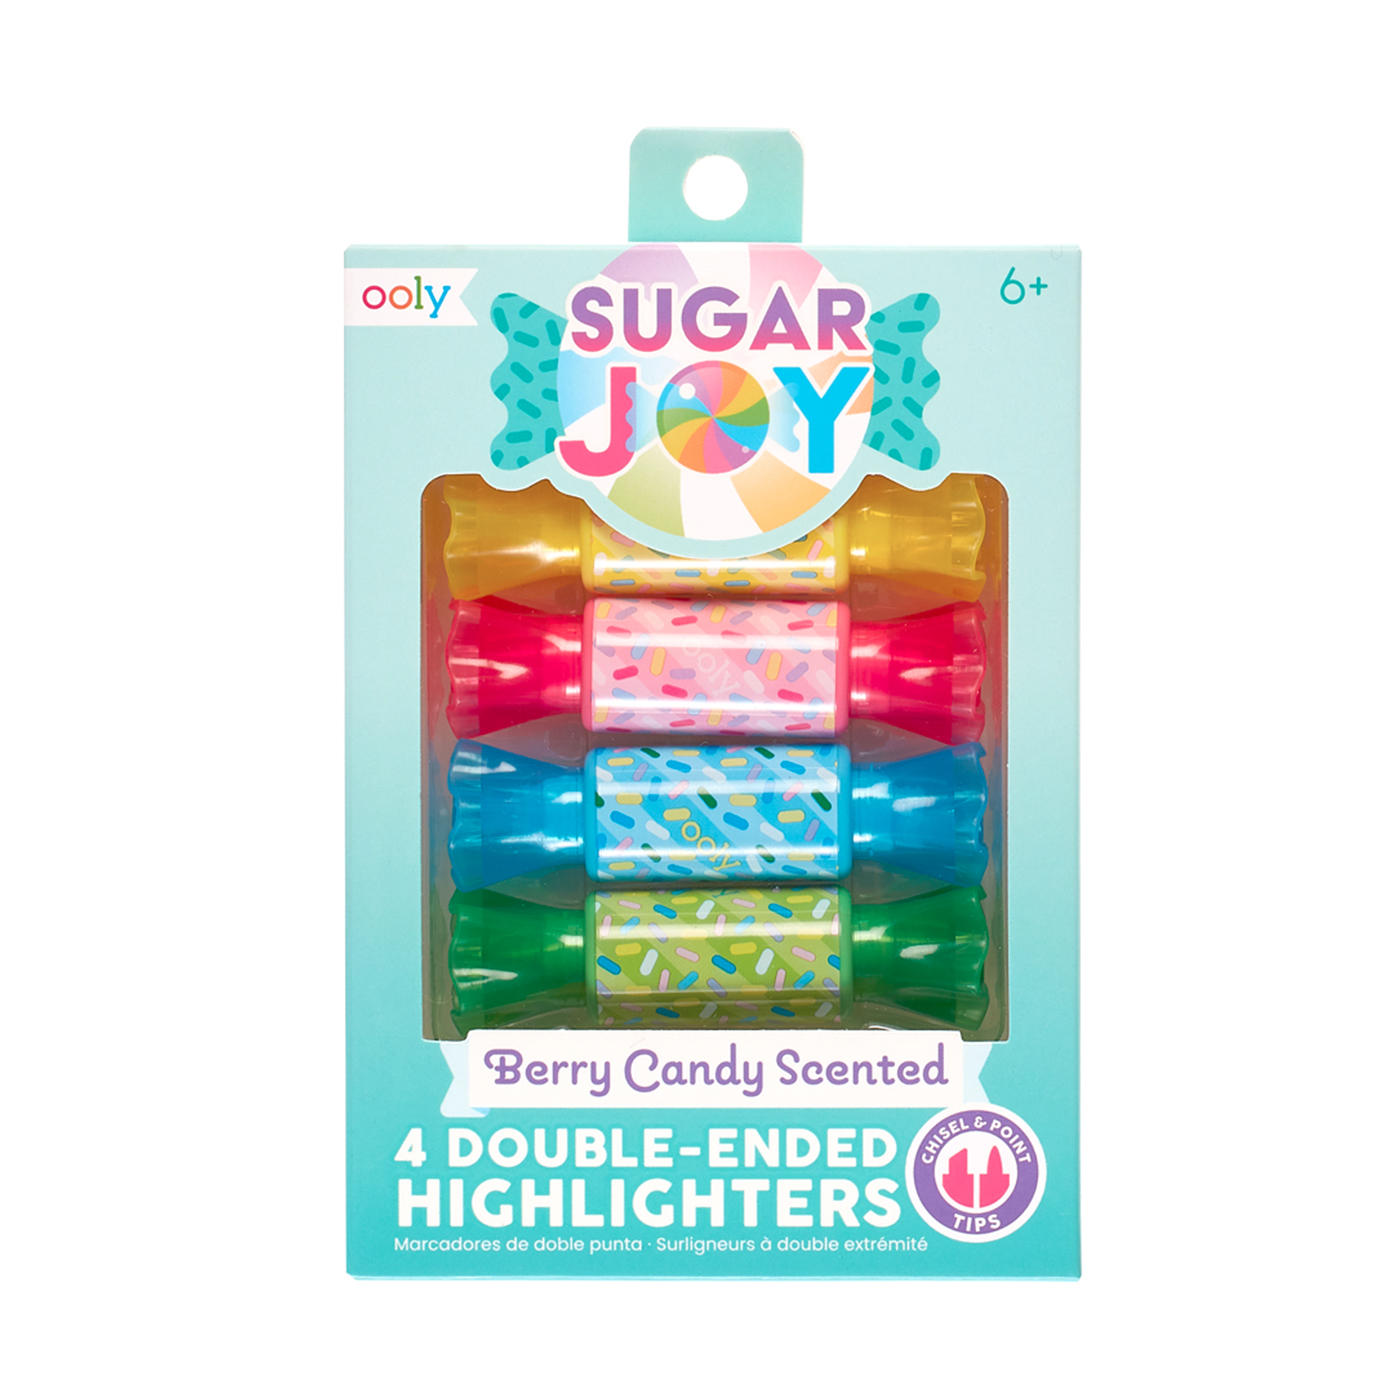  Ooly Sugar Joy Kokulu Çift Uçlu 4’lü Highlighter